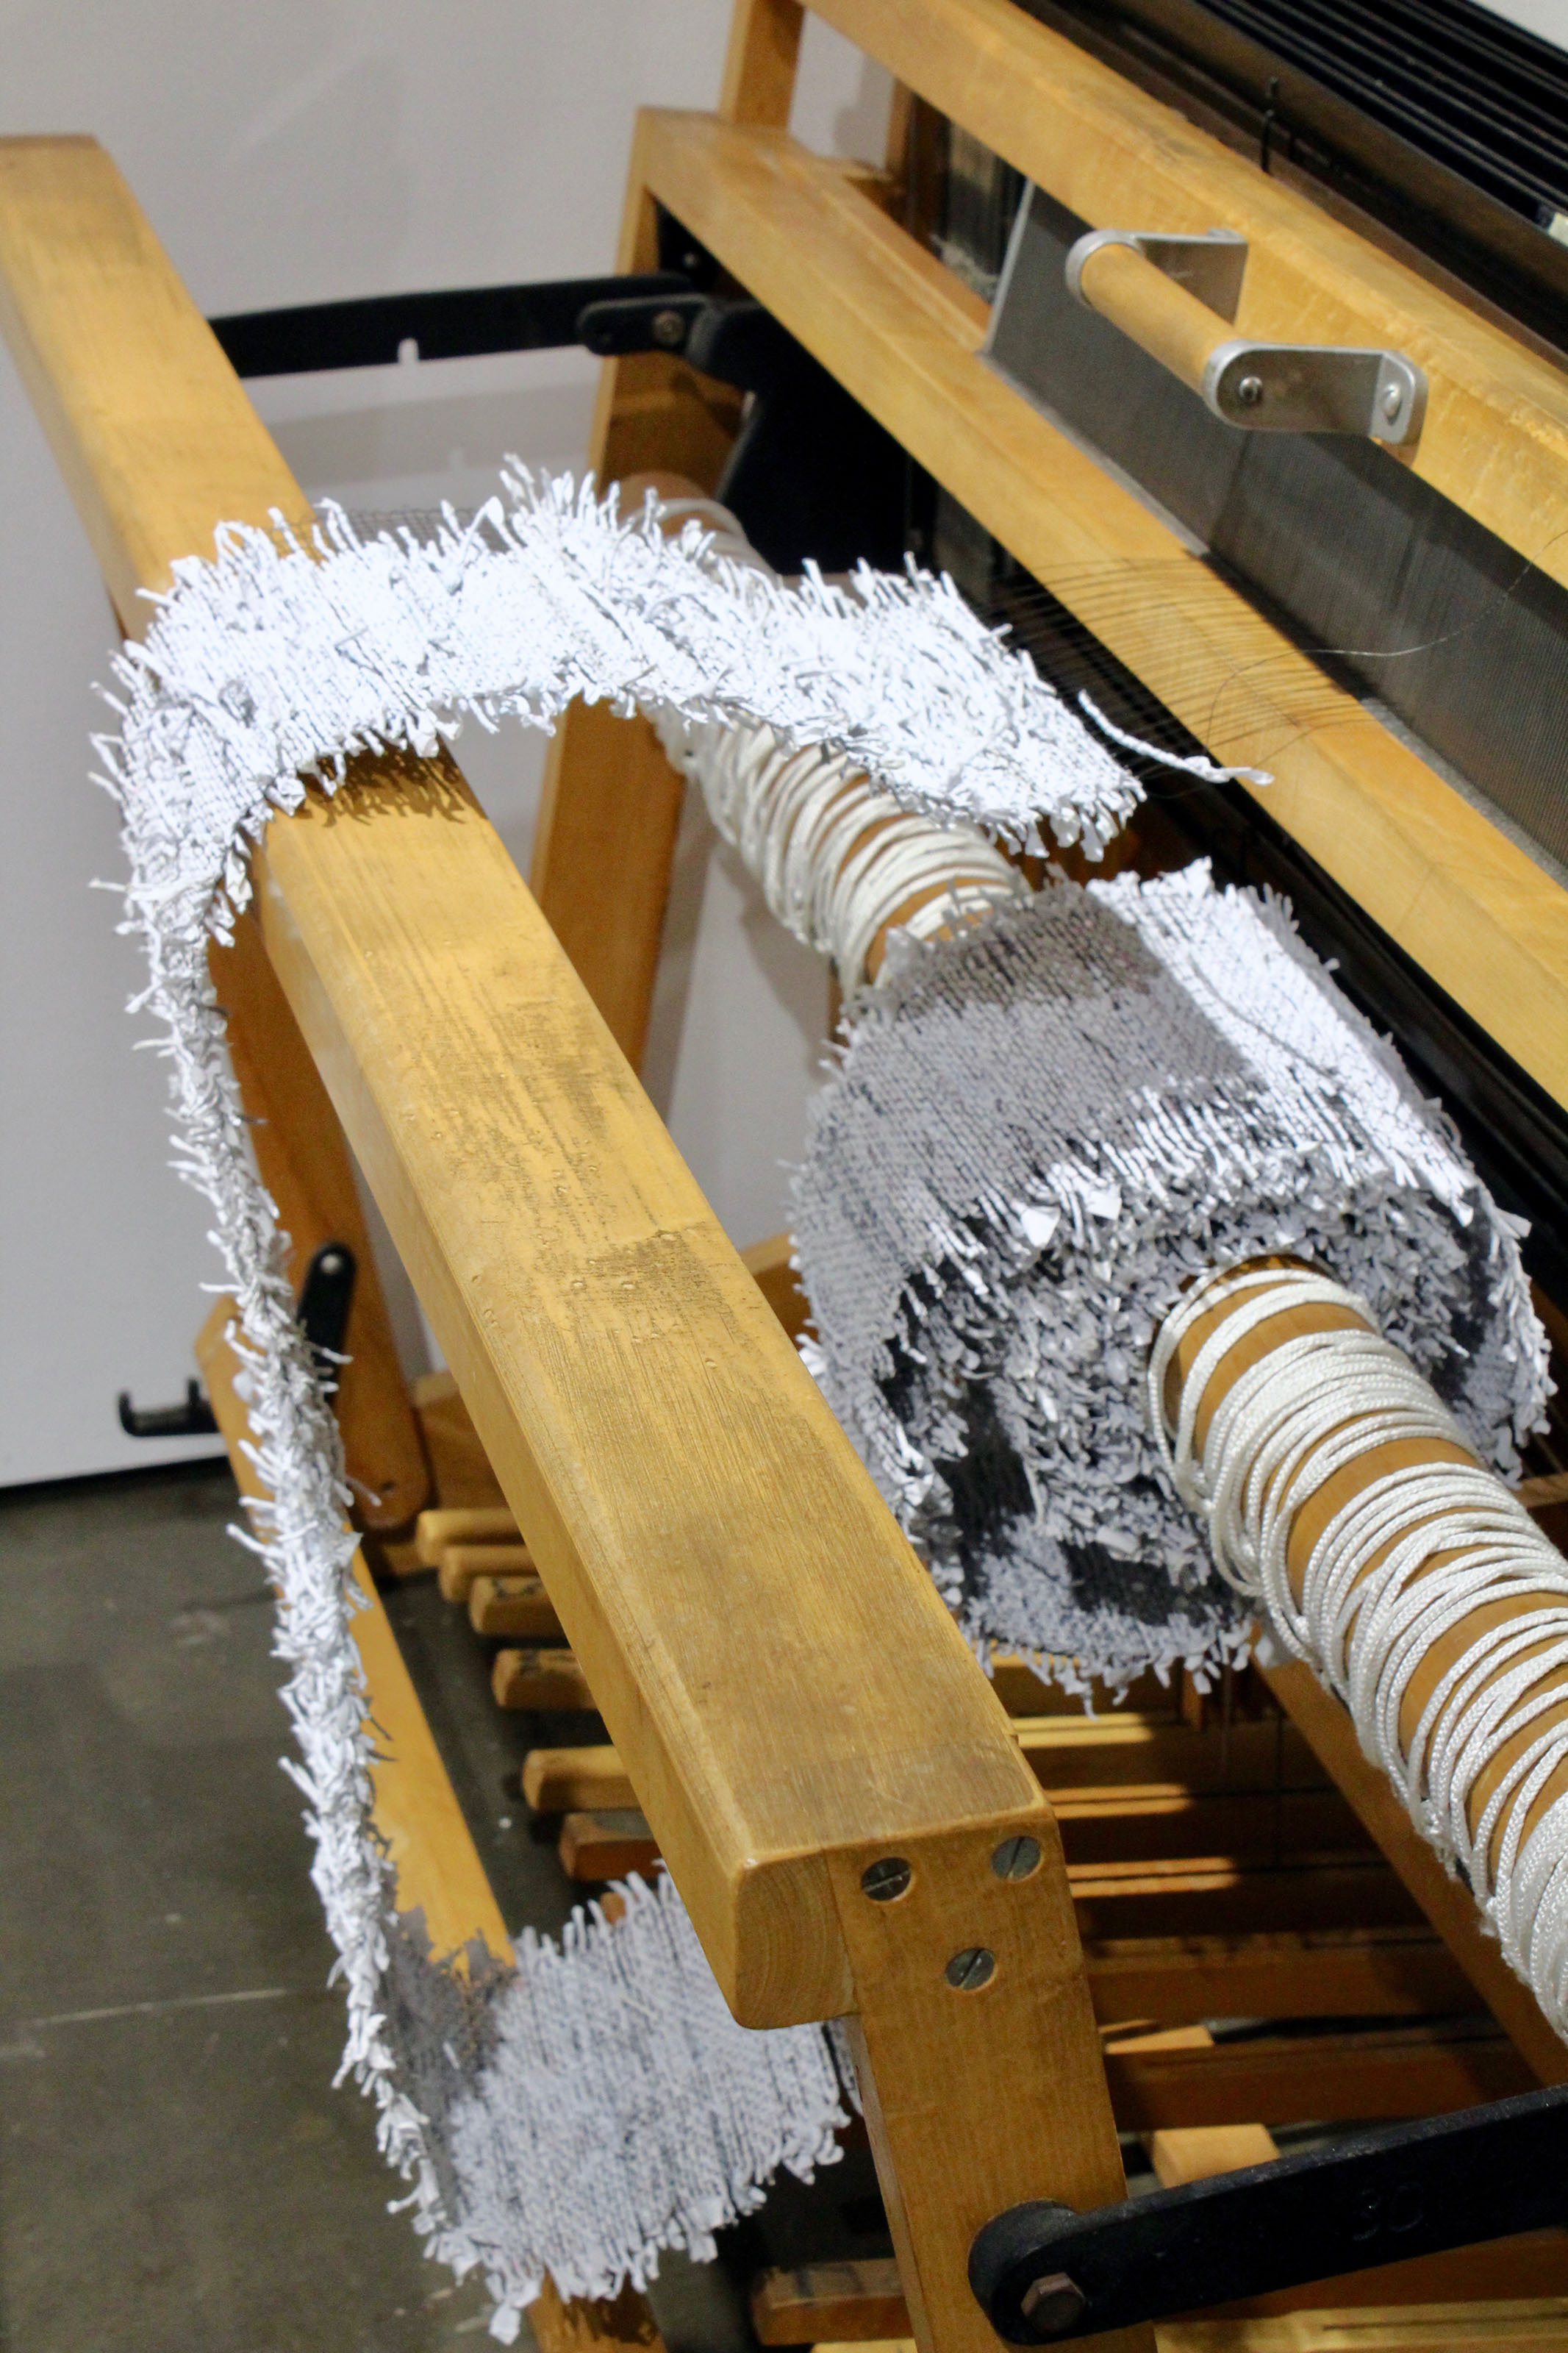  gallery view: In process on 72” floor loom - detail 